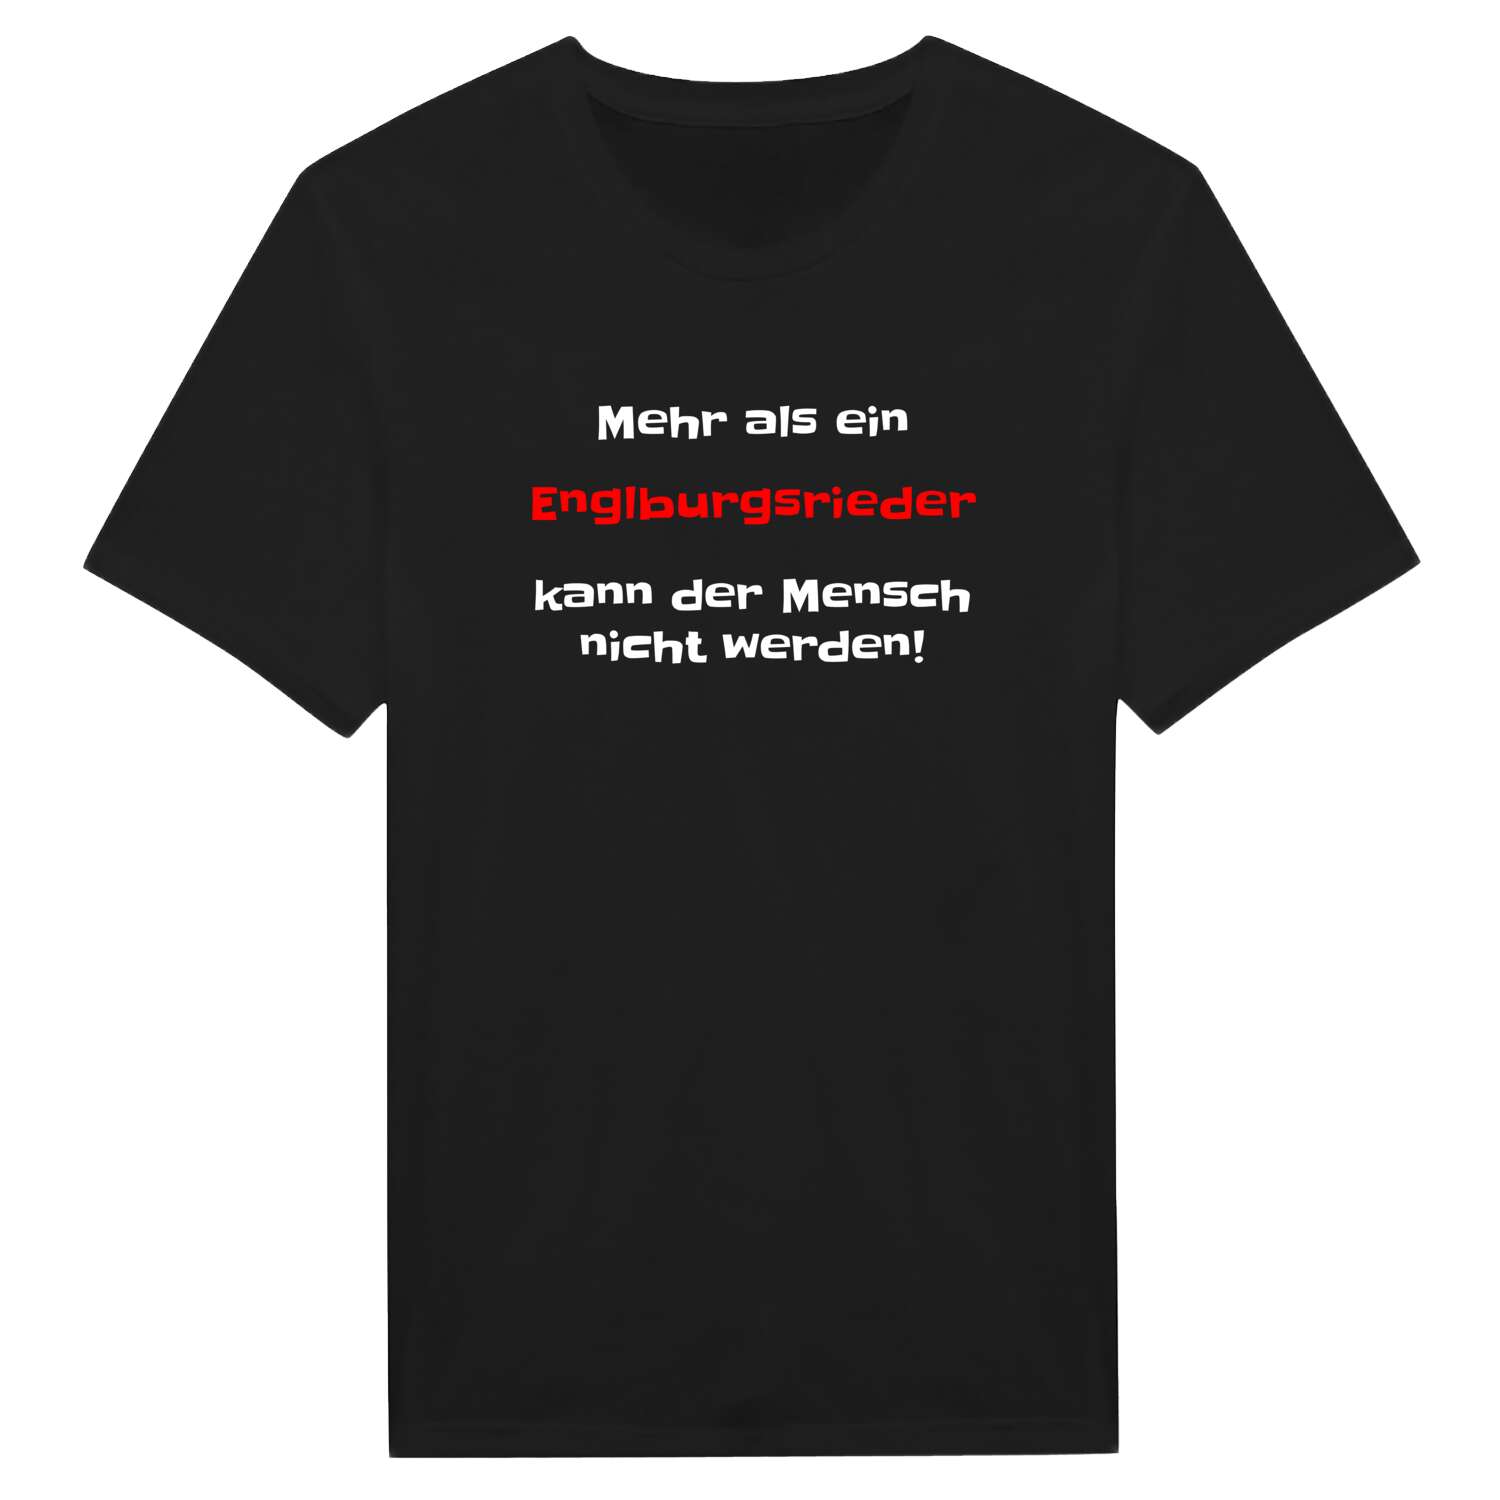 Englburgsried T-Shirt »Mehr als ein«